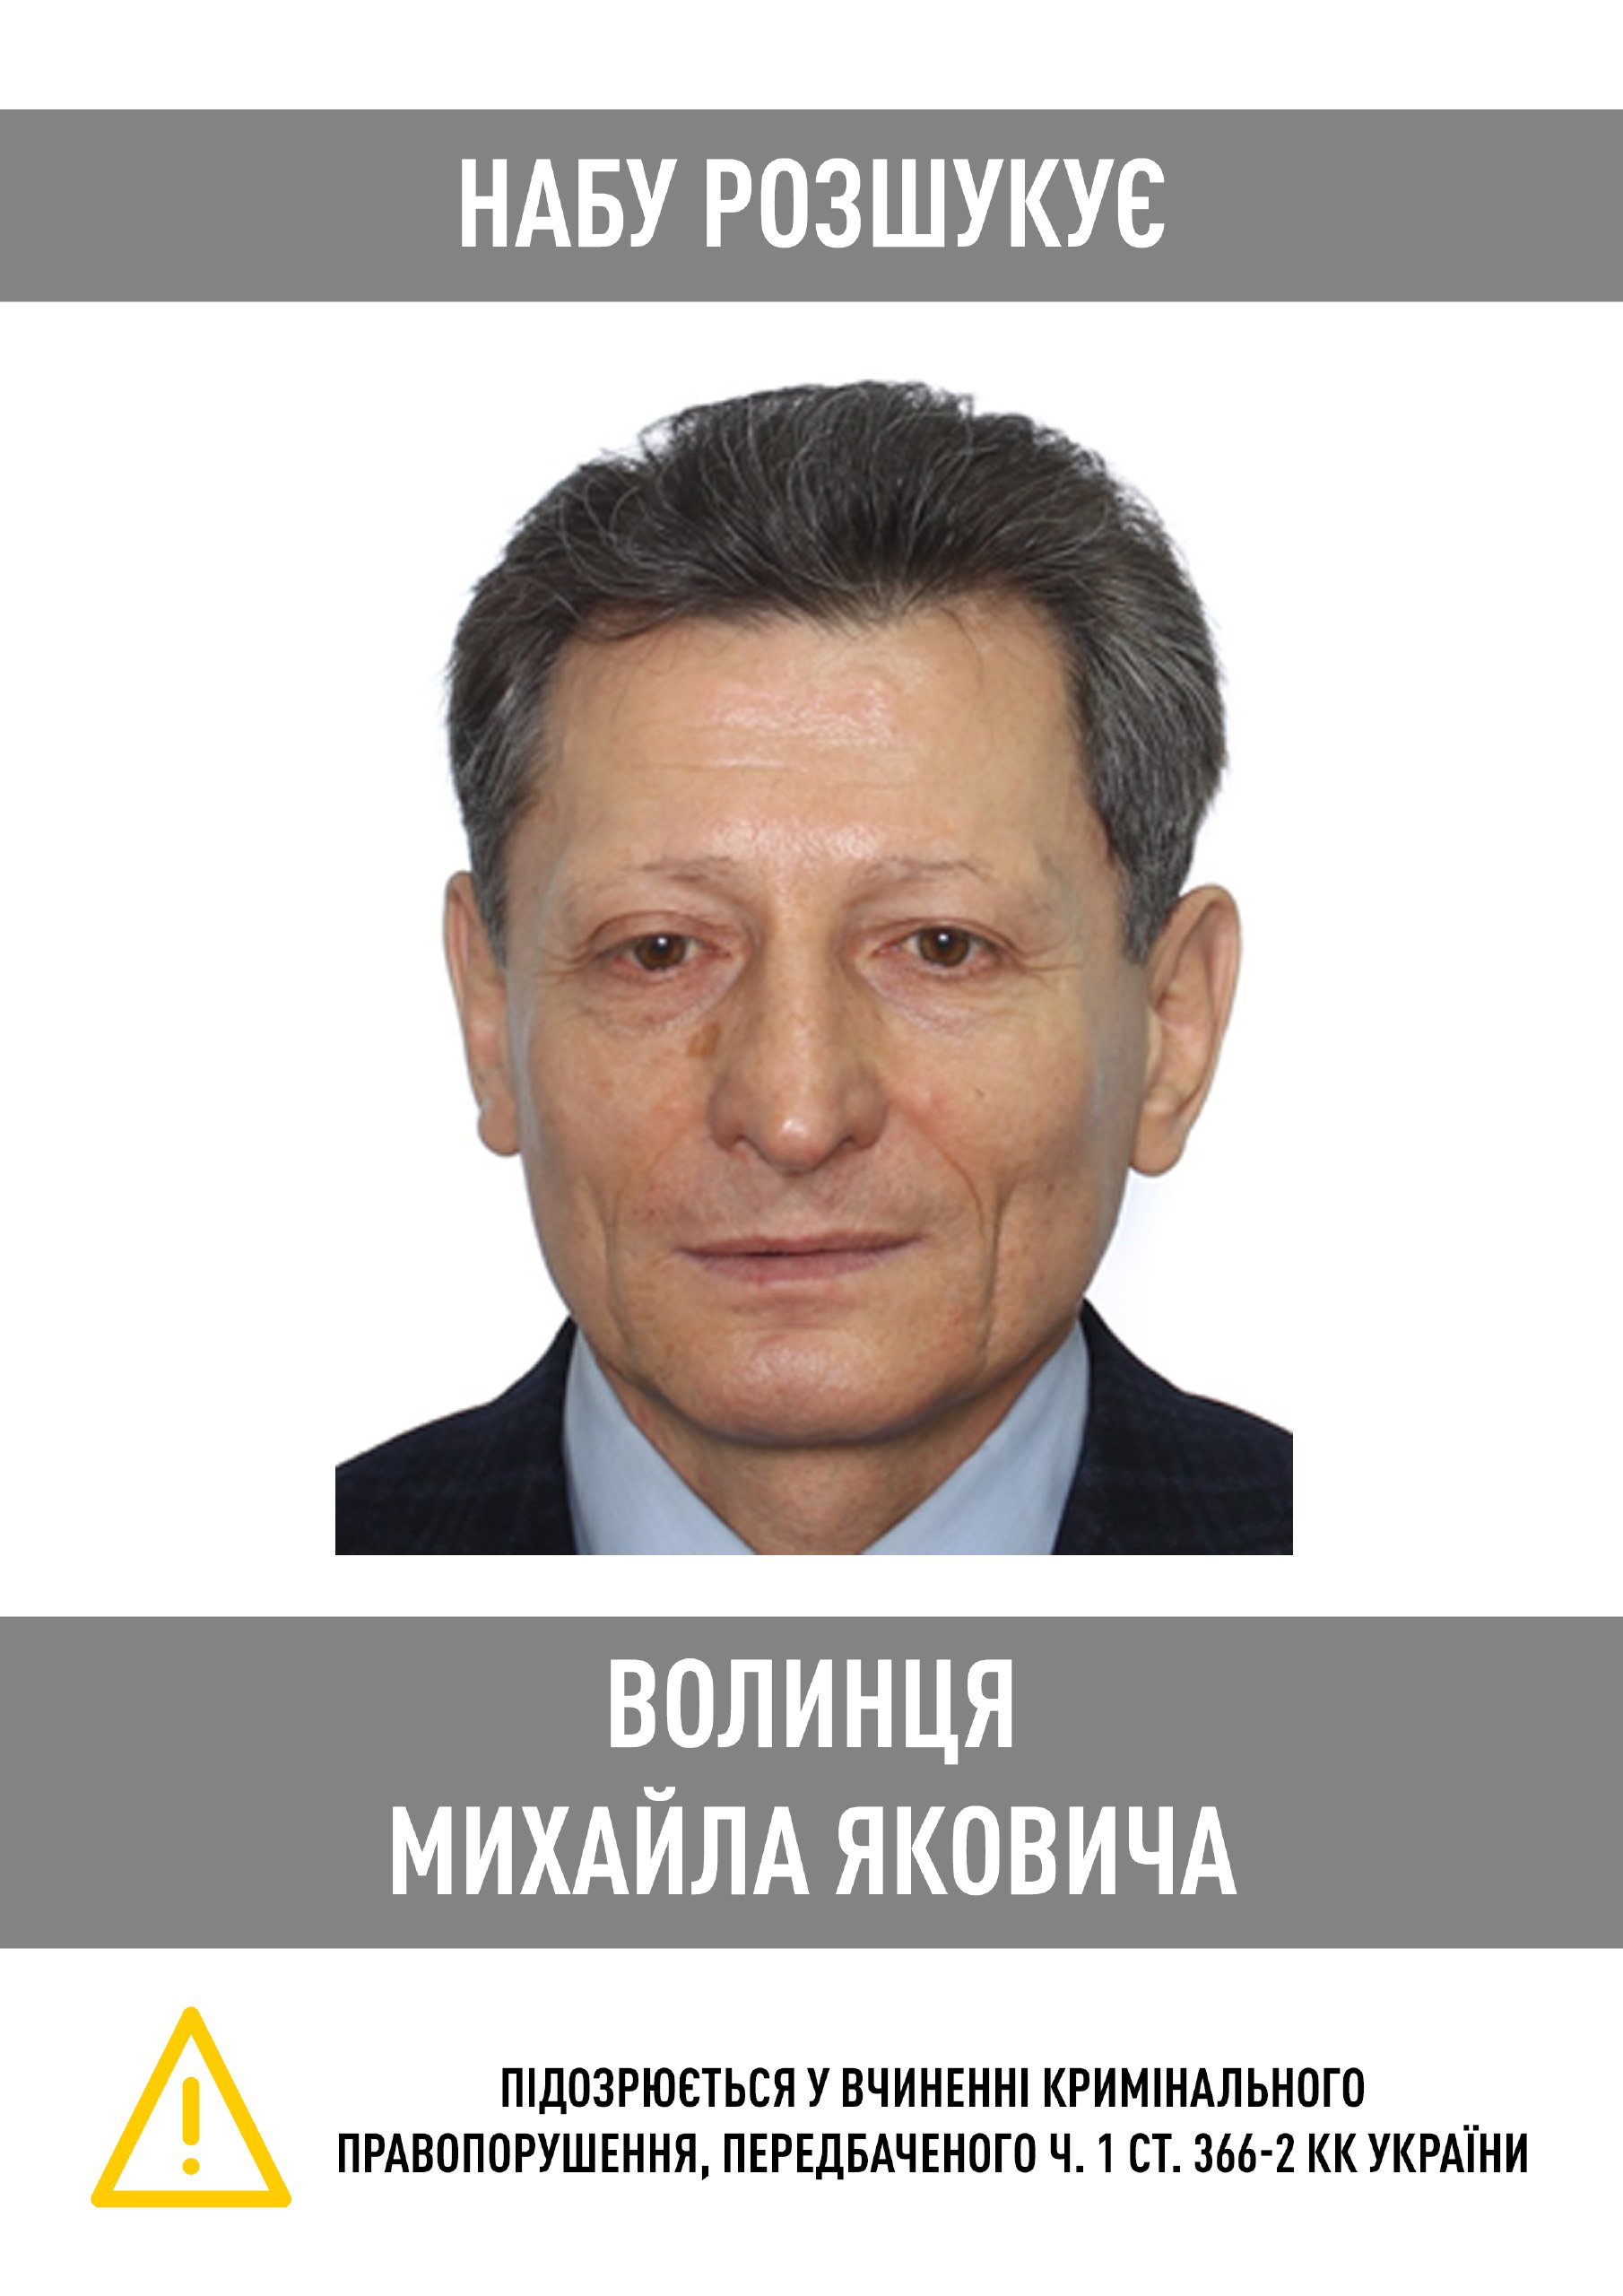 Национальное антикоррупционное бюро объявило в розыск нардепа Михаила Волынца